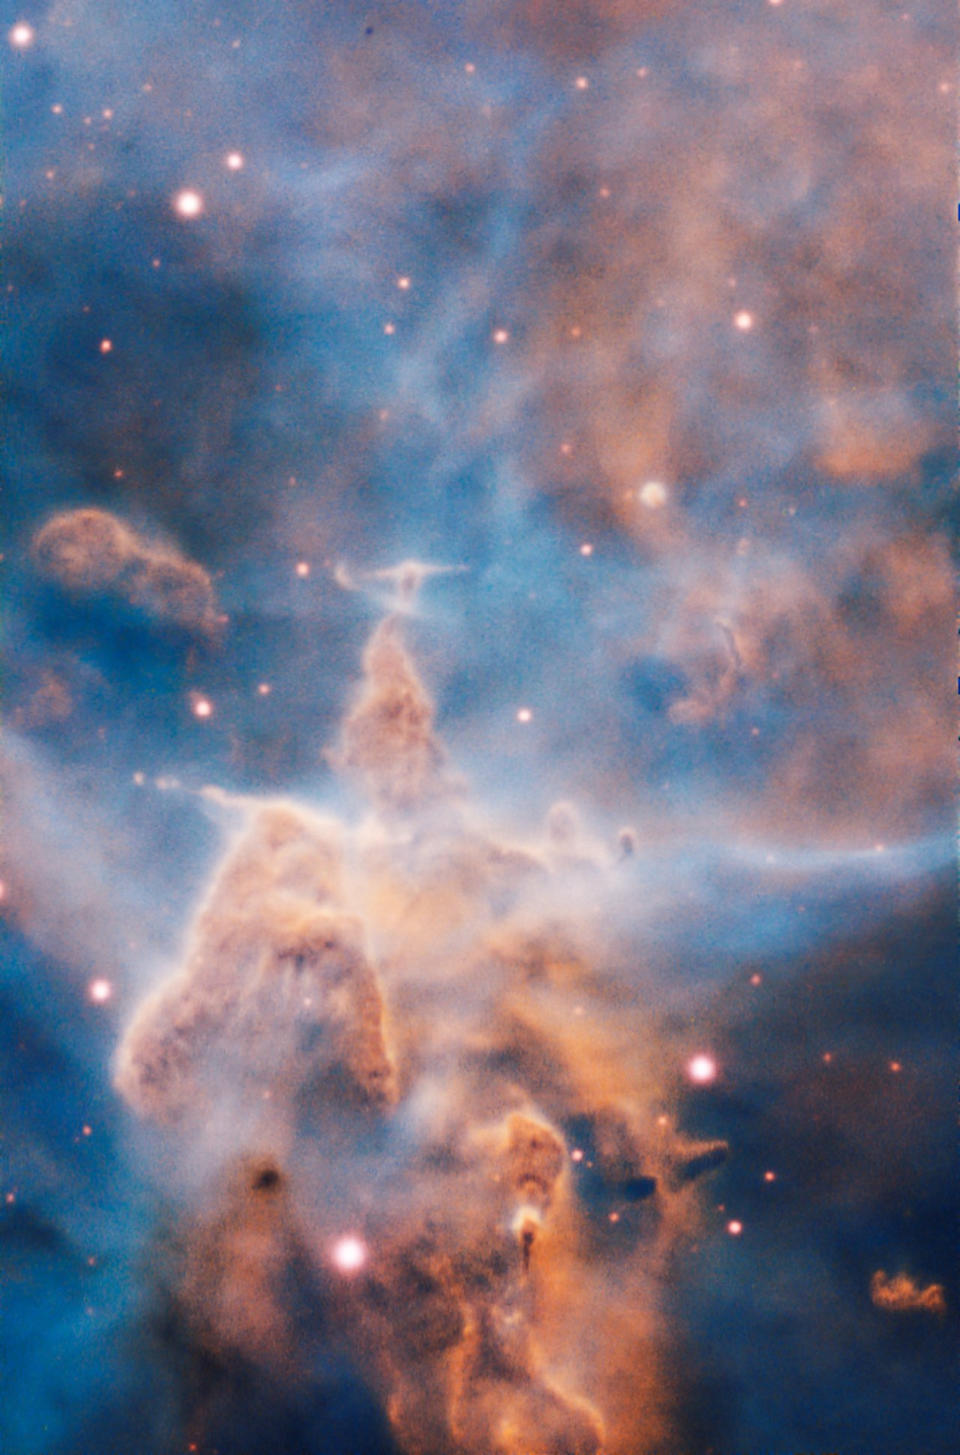 Esta cima escarpada de fantasía, envuelta por nubes tenues, parece a un paisaje extraño. Pero es un pilar de gas y polvo de tres años luz de alto que está siendo devorado por la brillante luz proveniente de estrellas brillantes cercanas. (ESO/A. McLeod)